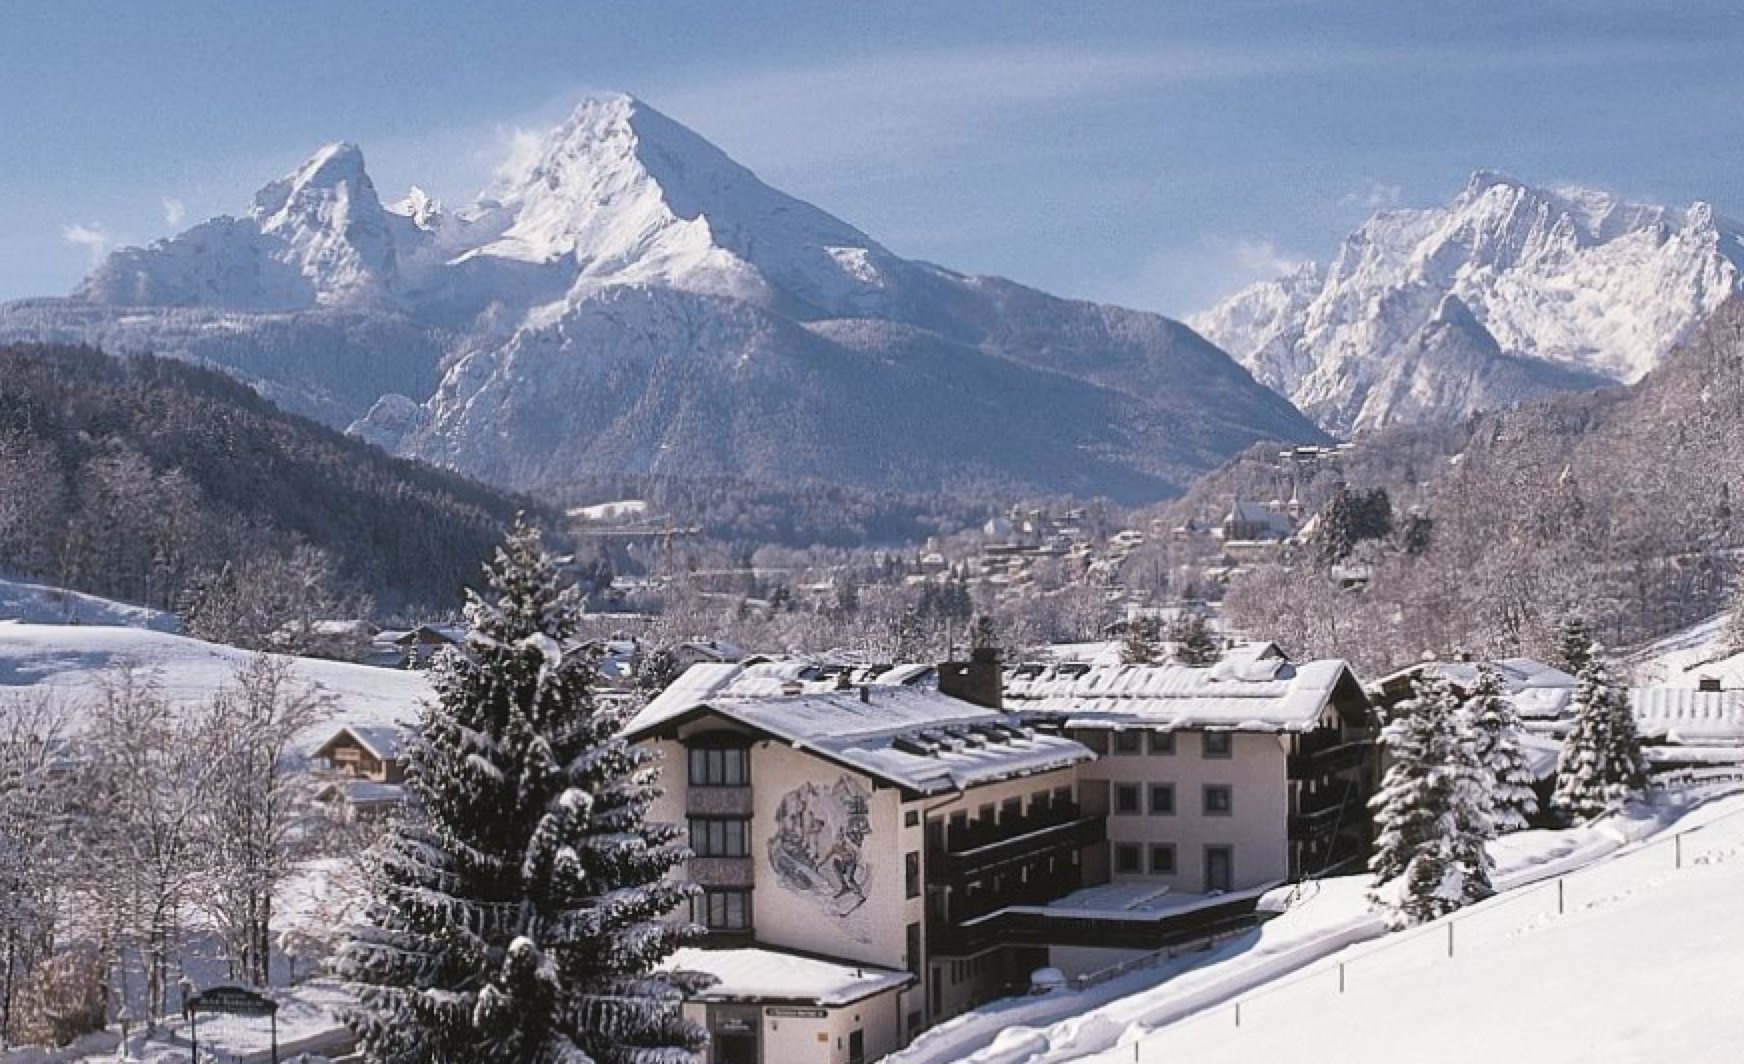 Winterreis naar Berchtesgaden van 21 tot 29 januari 2023